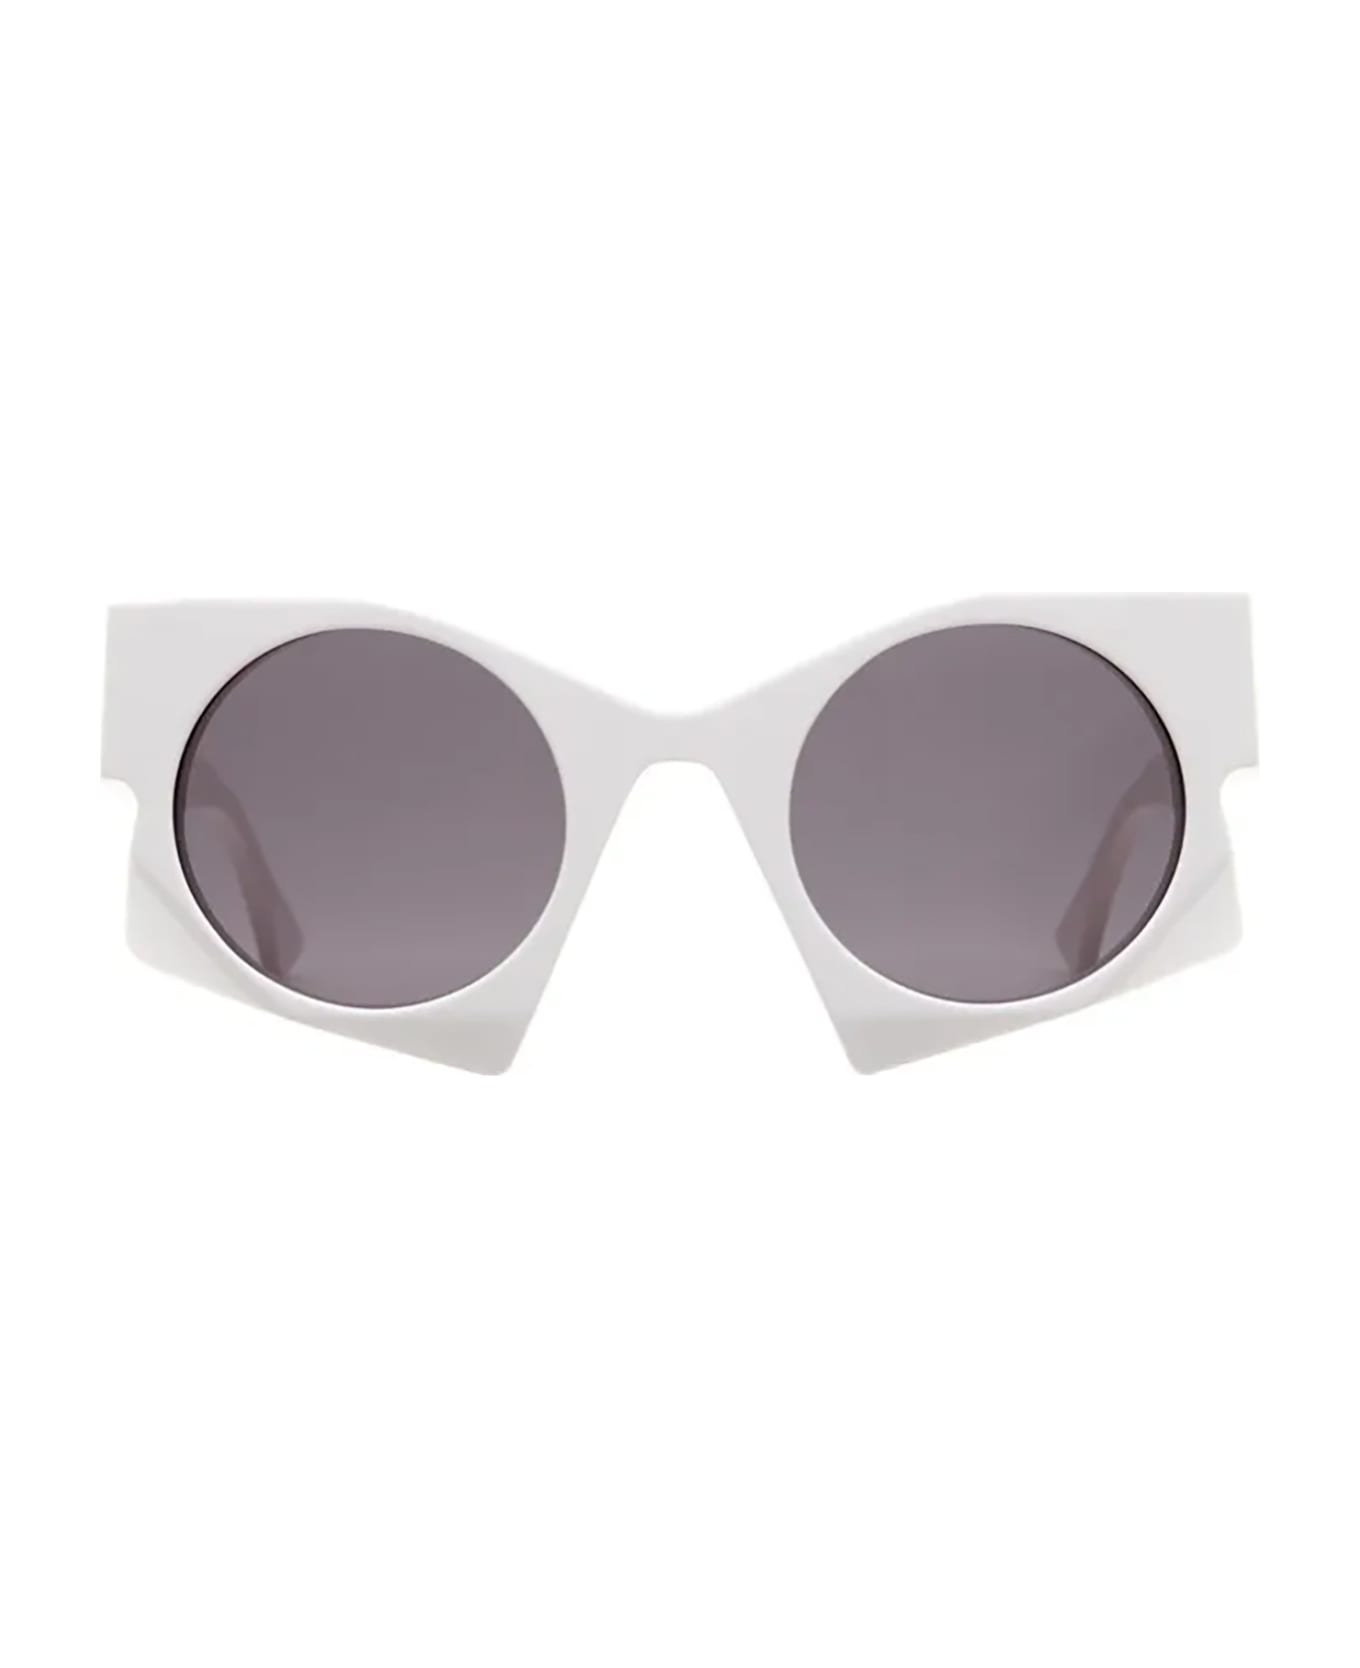 Kuboraum U5 Sunglasses - Grey